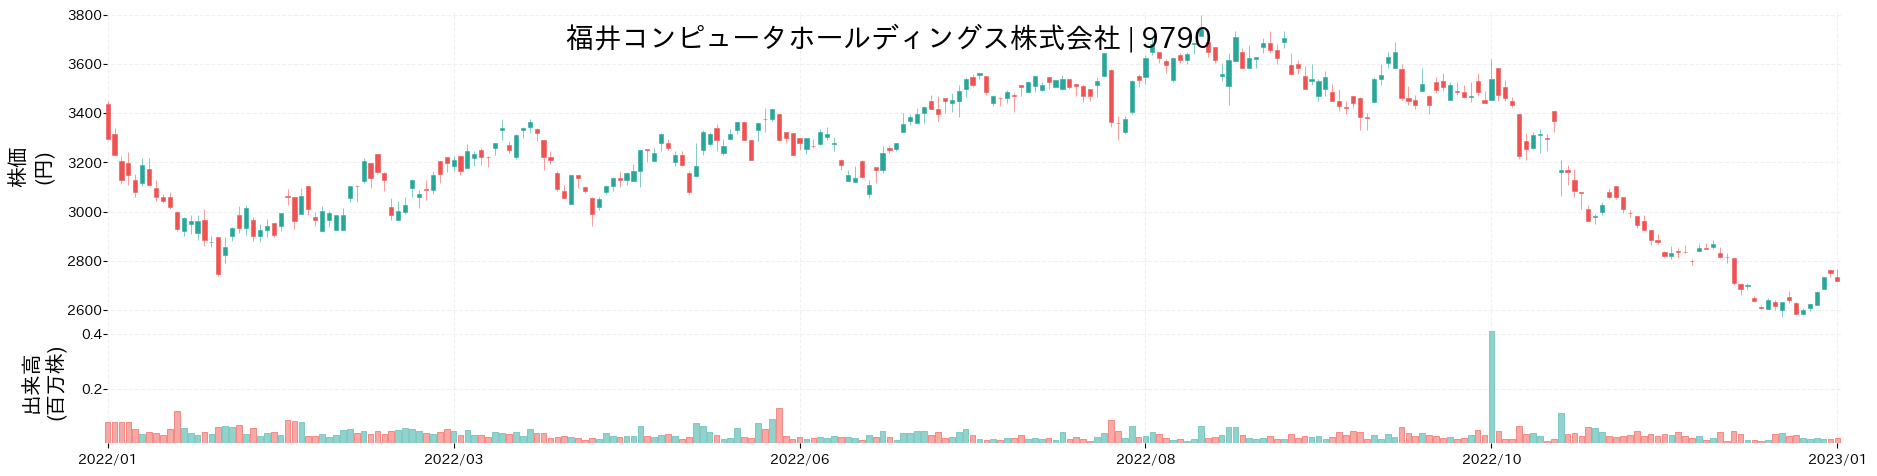 福井コンピュータホールディングスの株価推移(2022)